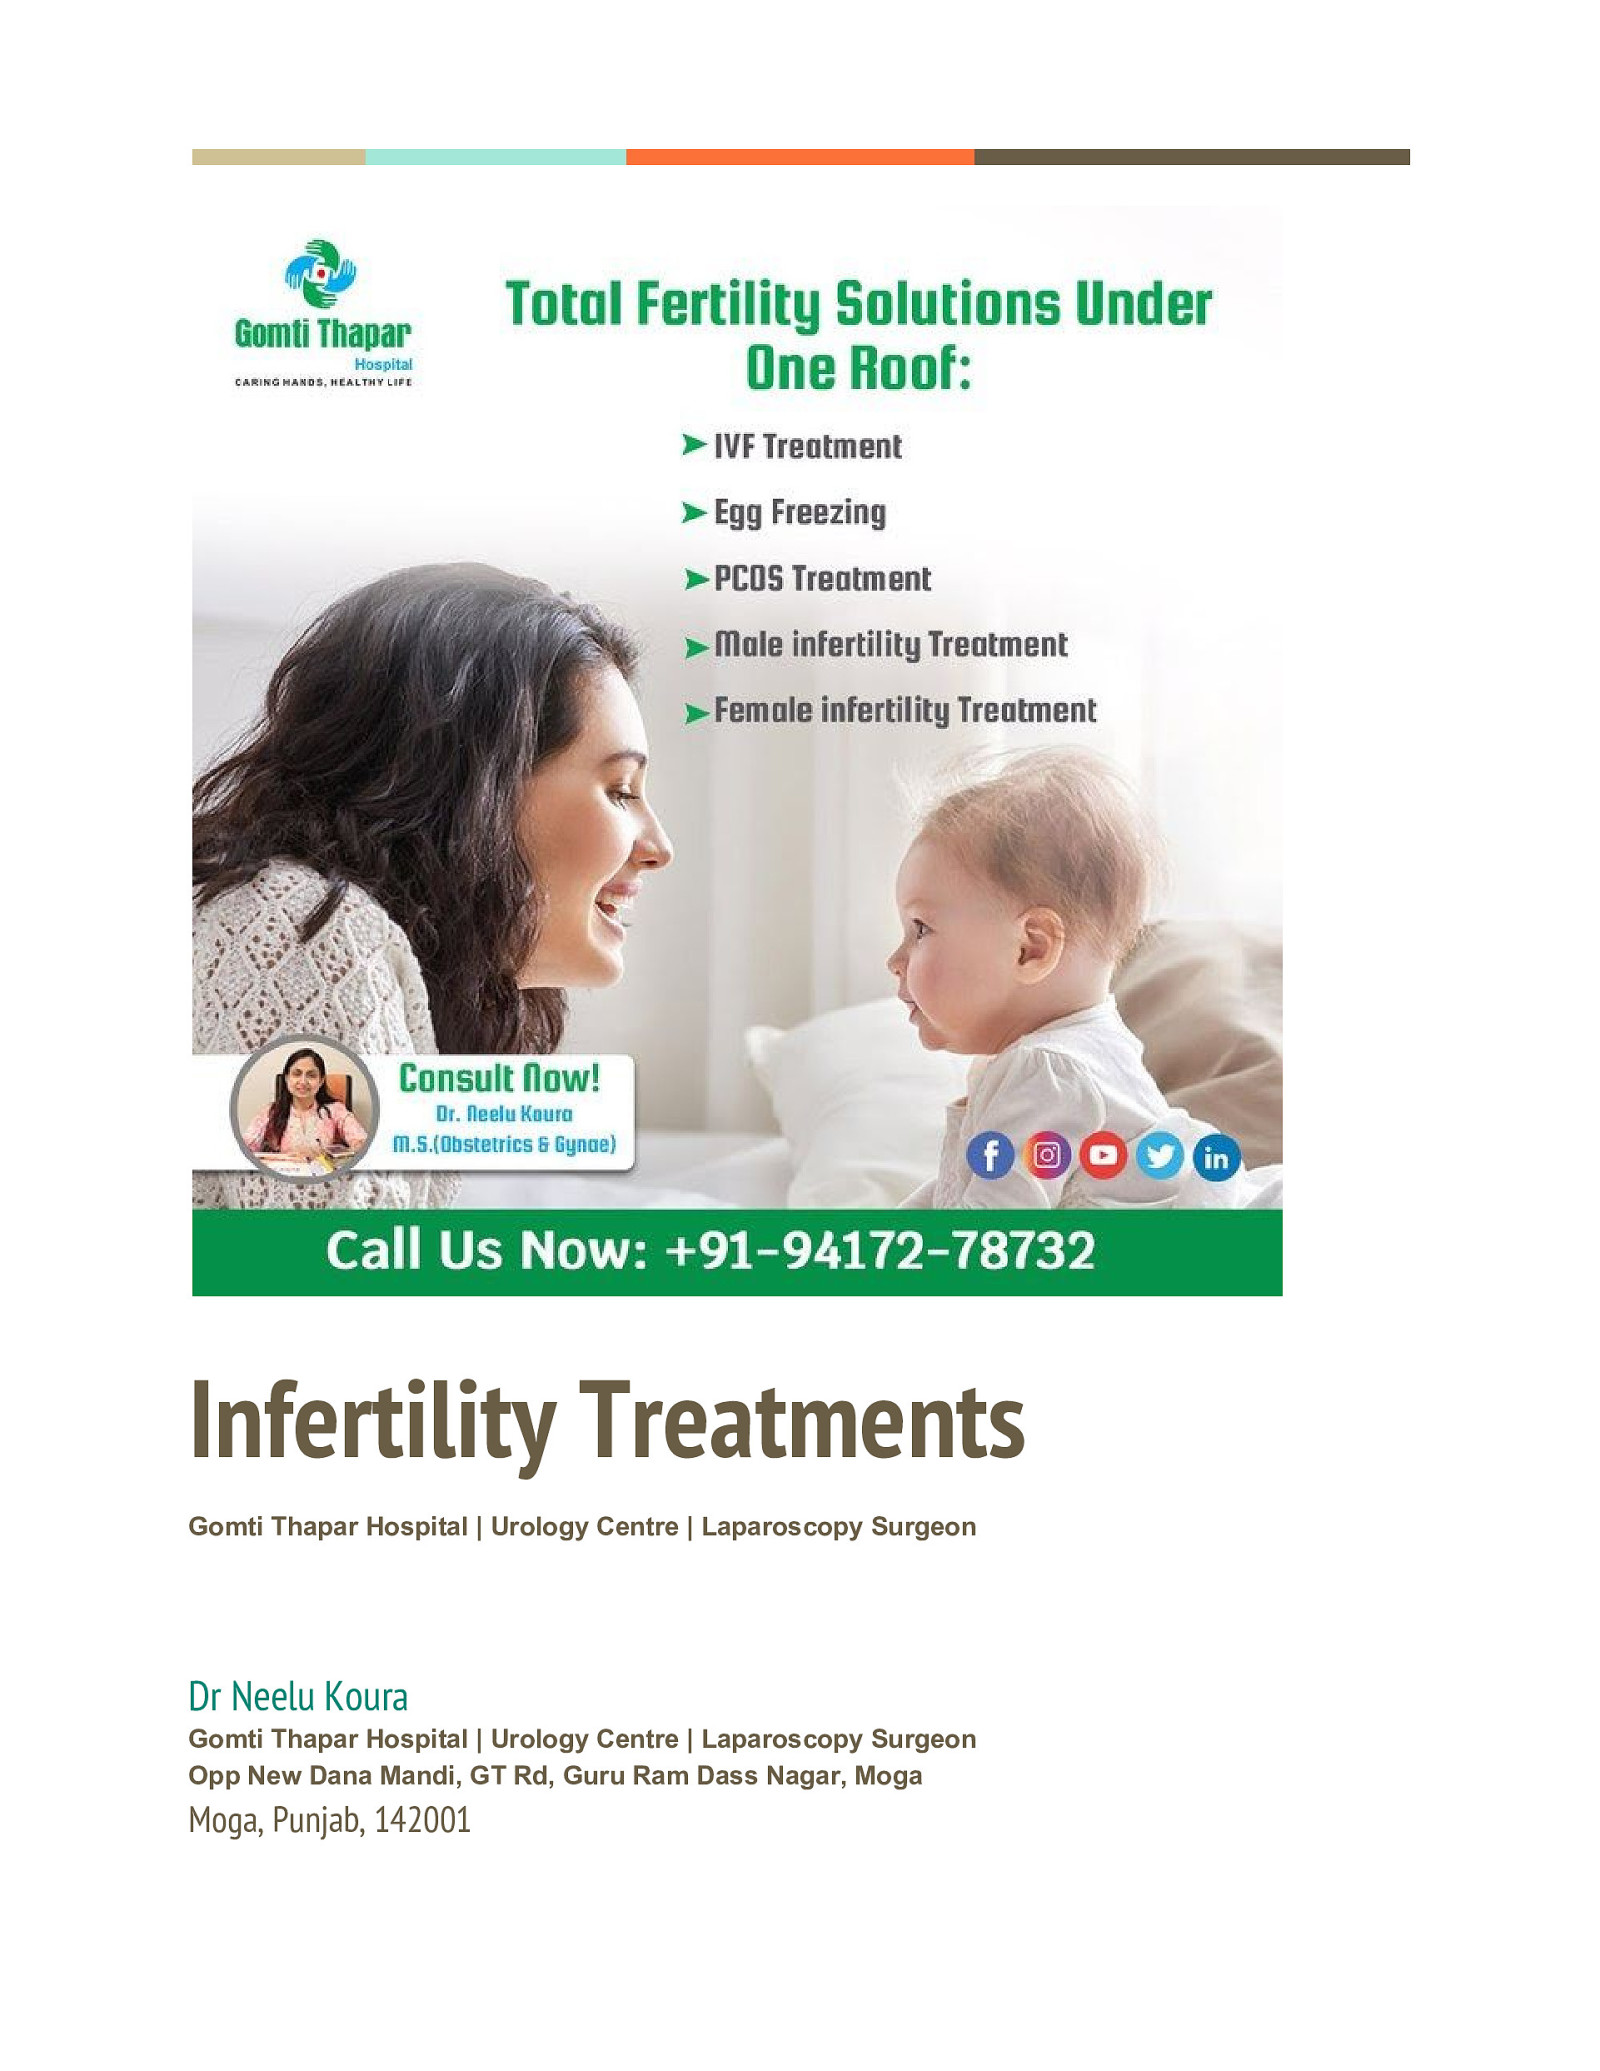 Infertility treatments